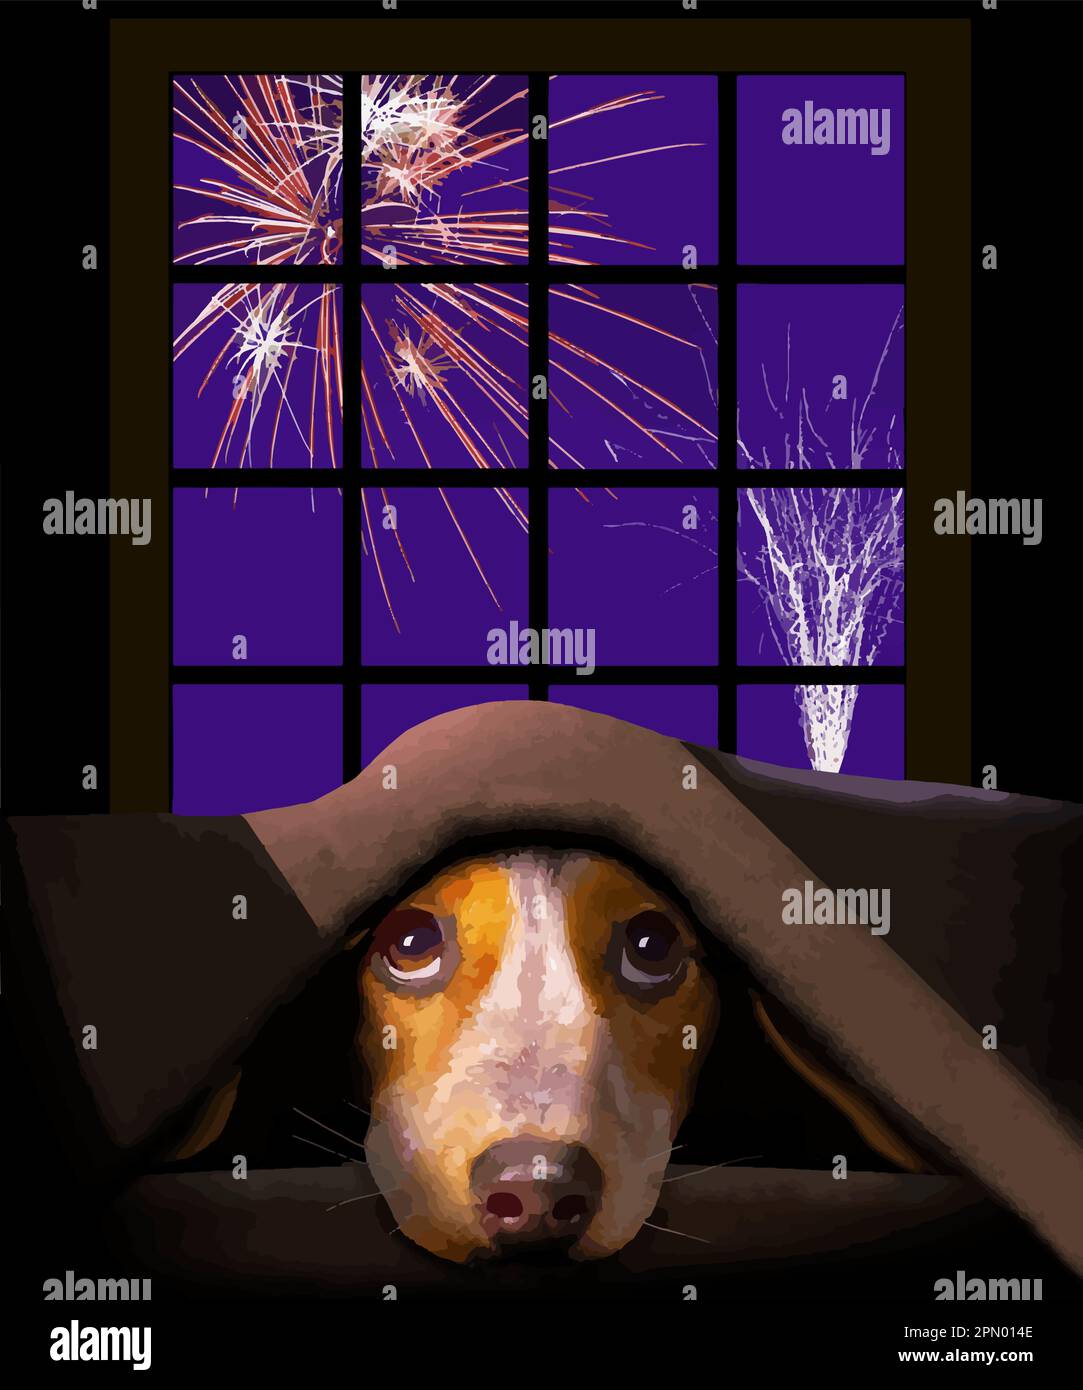 Un adorable petit chien Beagle croque sous une couverture comme feux d'artifice explosent à l'extérieur de la fenêtre derrière lui. Illustration de Vecteur